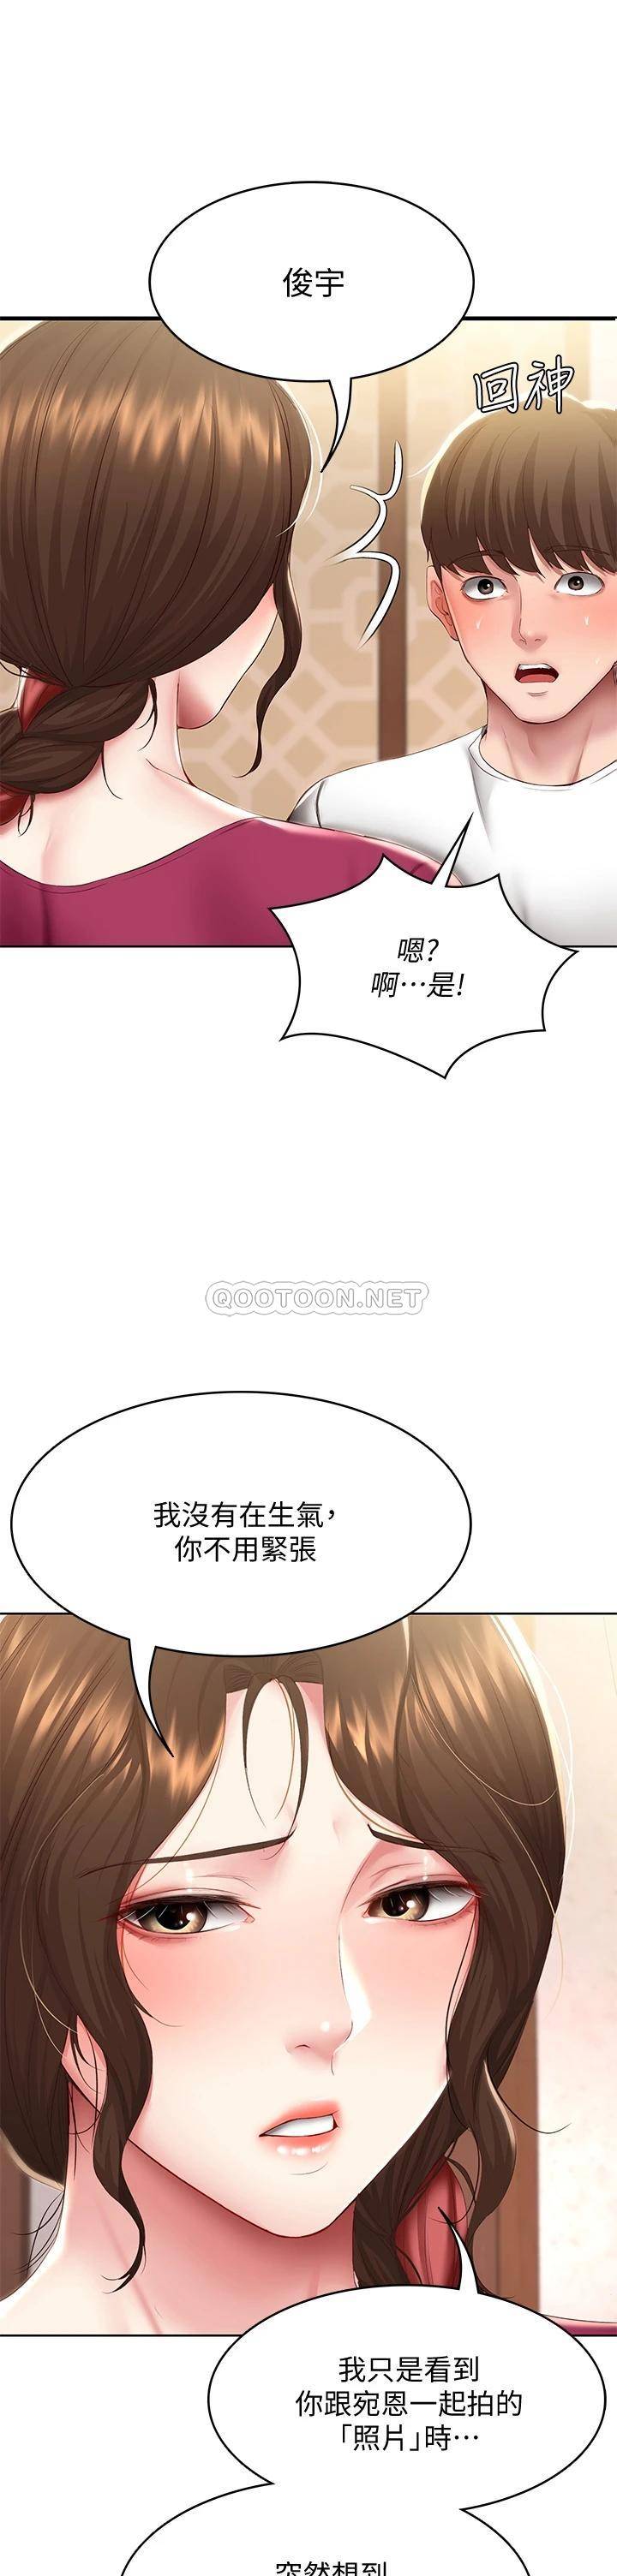 韩国污漫画 寄宿日記 第88话嫉妒女儿的美静 11